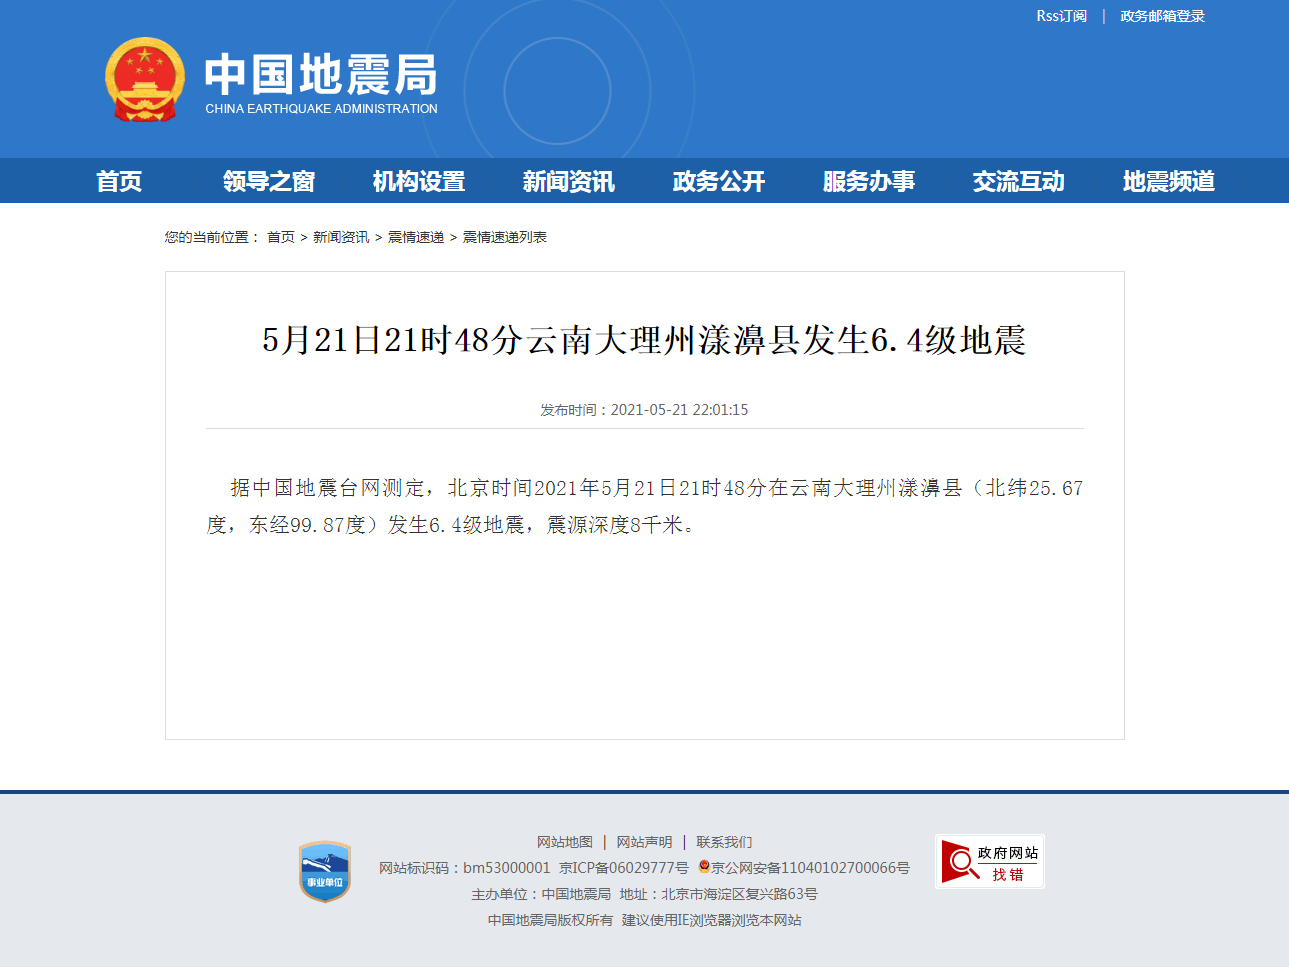 5月21日21时48分云南大理州漾濞县发生6.4级地震.png